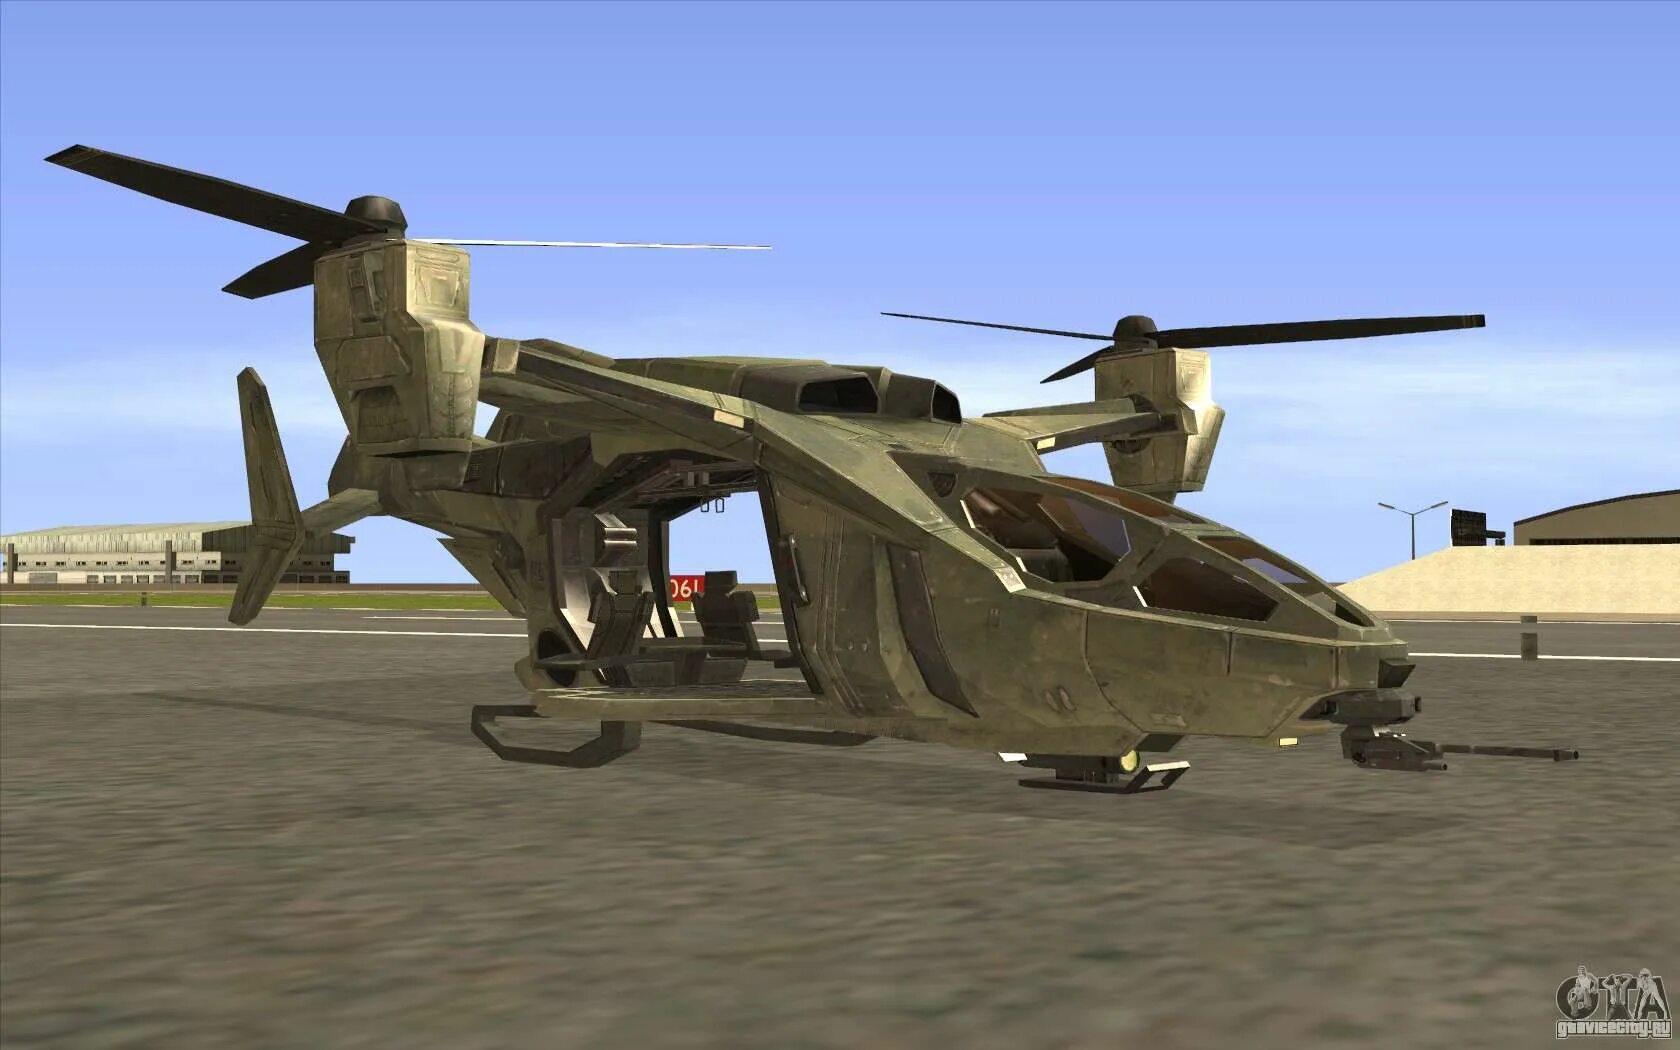 Вертолет Hunter GTA San Andreas. ГТА Сан андреас вертолет Хантер. GTA San Andreas вертолет. Вертолеты Hunter для ГТА Сан андреас. Вертолет в сан андреас